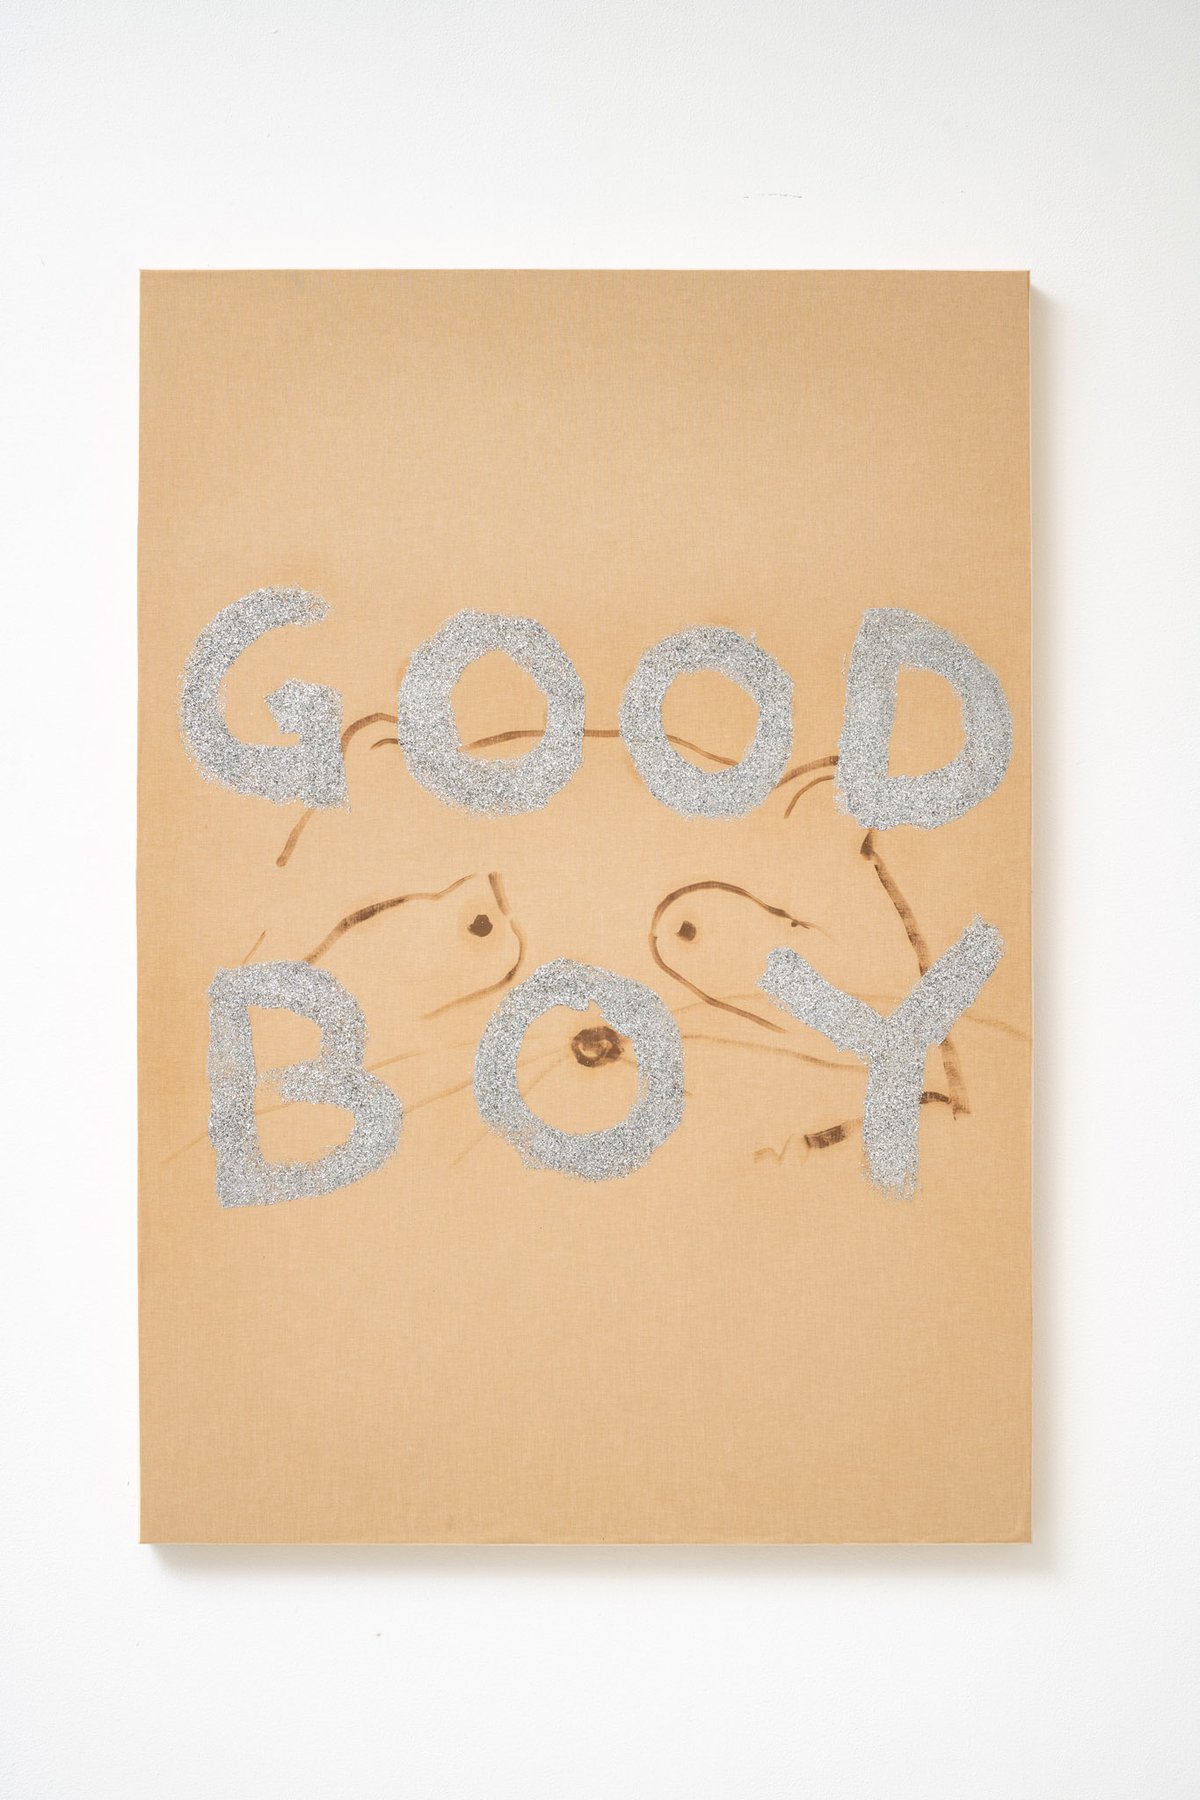 Philipp TimischlGOOD BOY (Brown, Sienna, Silver), 2019Canvas on wooden board, oil, glitter100 x 70 x 4 cm